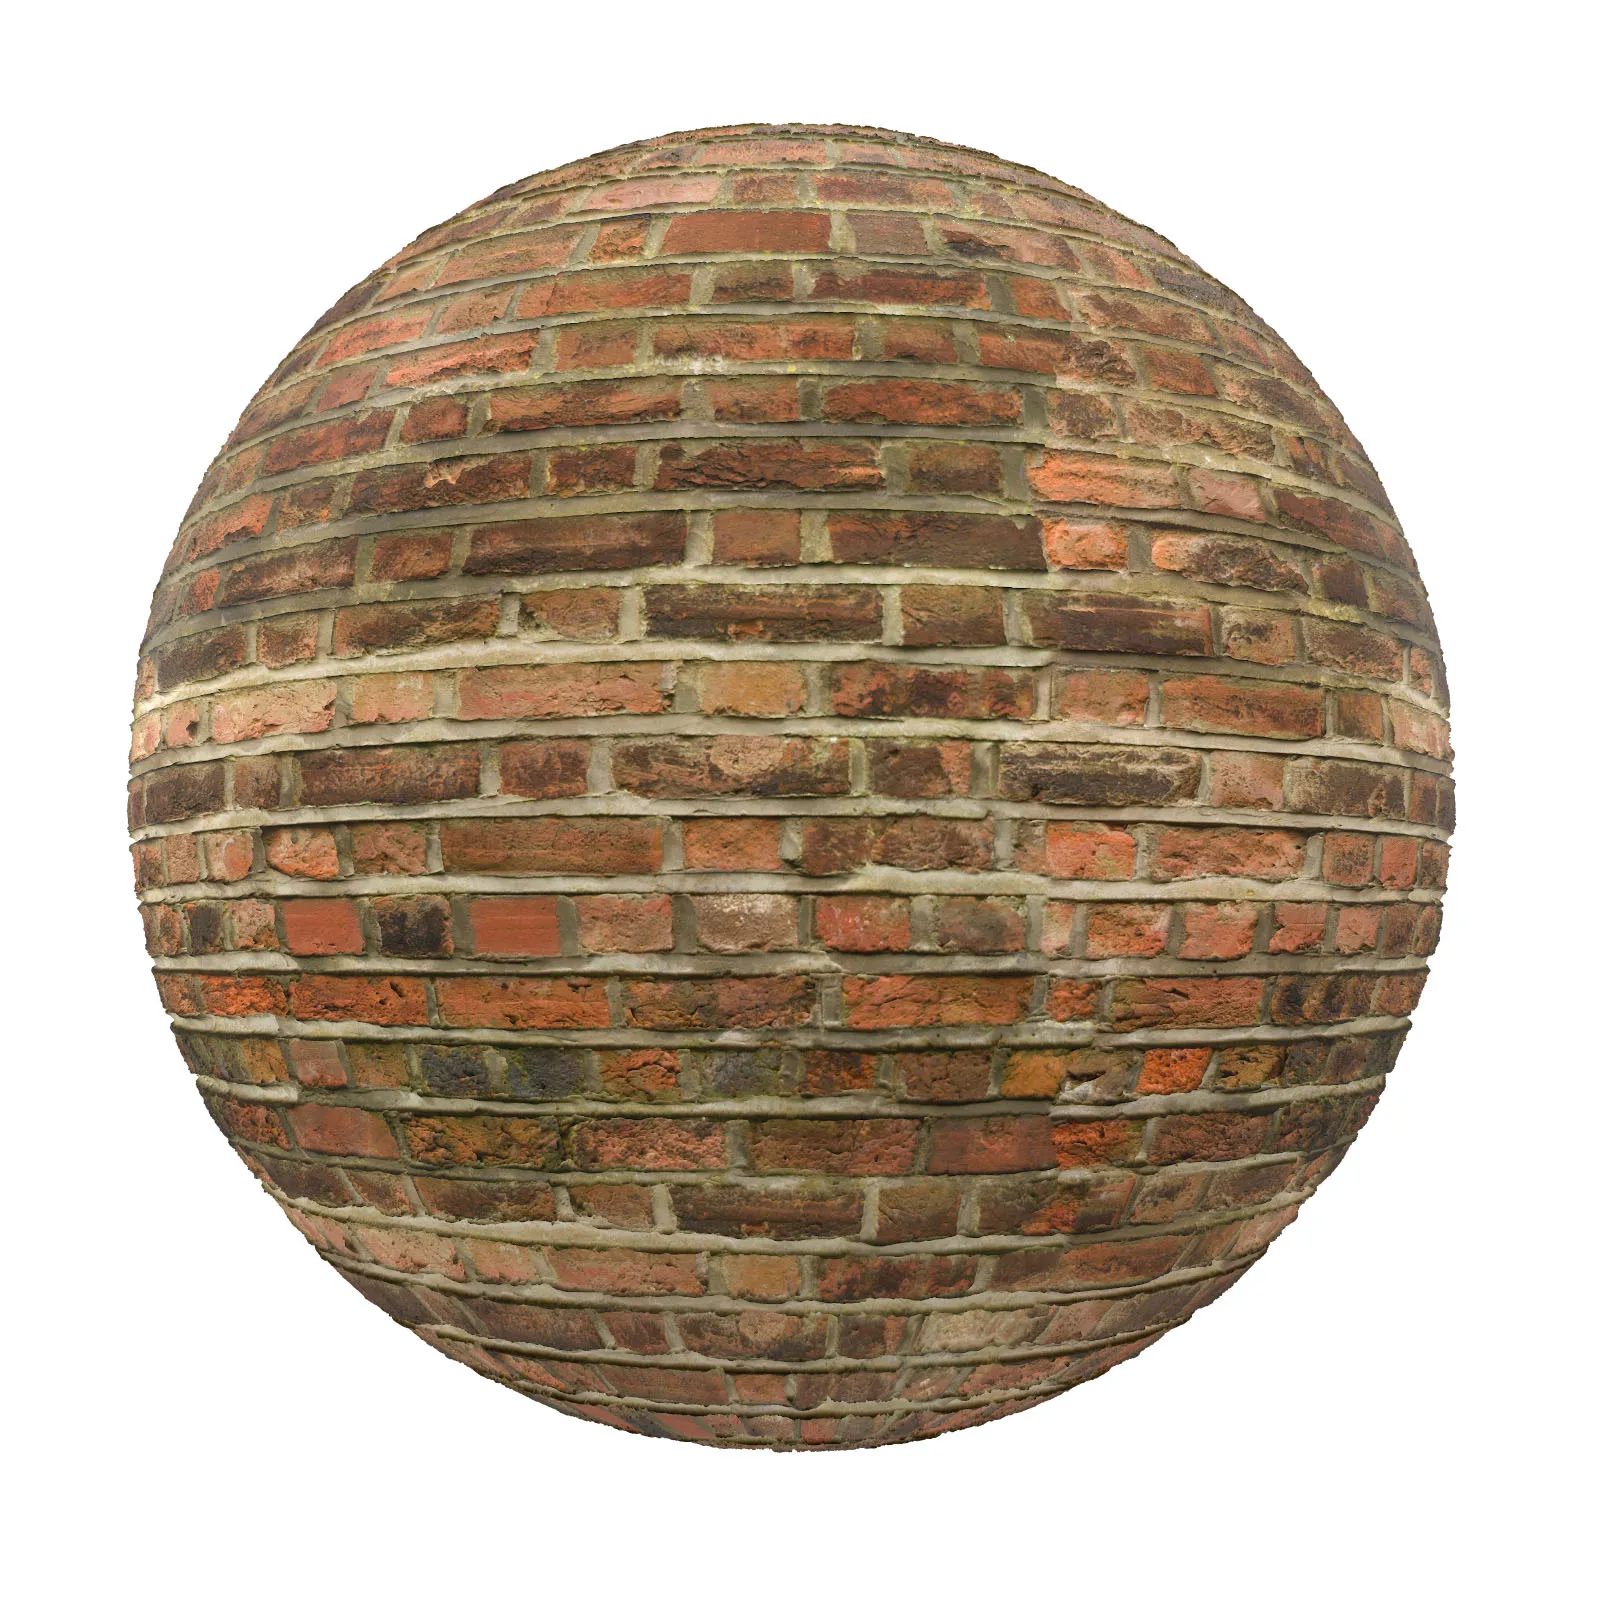 PBR CGAXIS TEXTURES – BRICK – Old Brick Wall 5